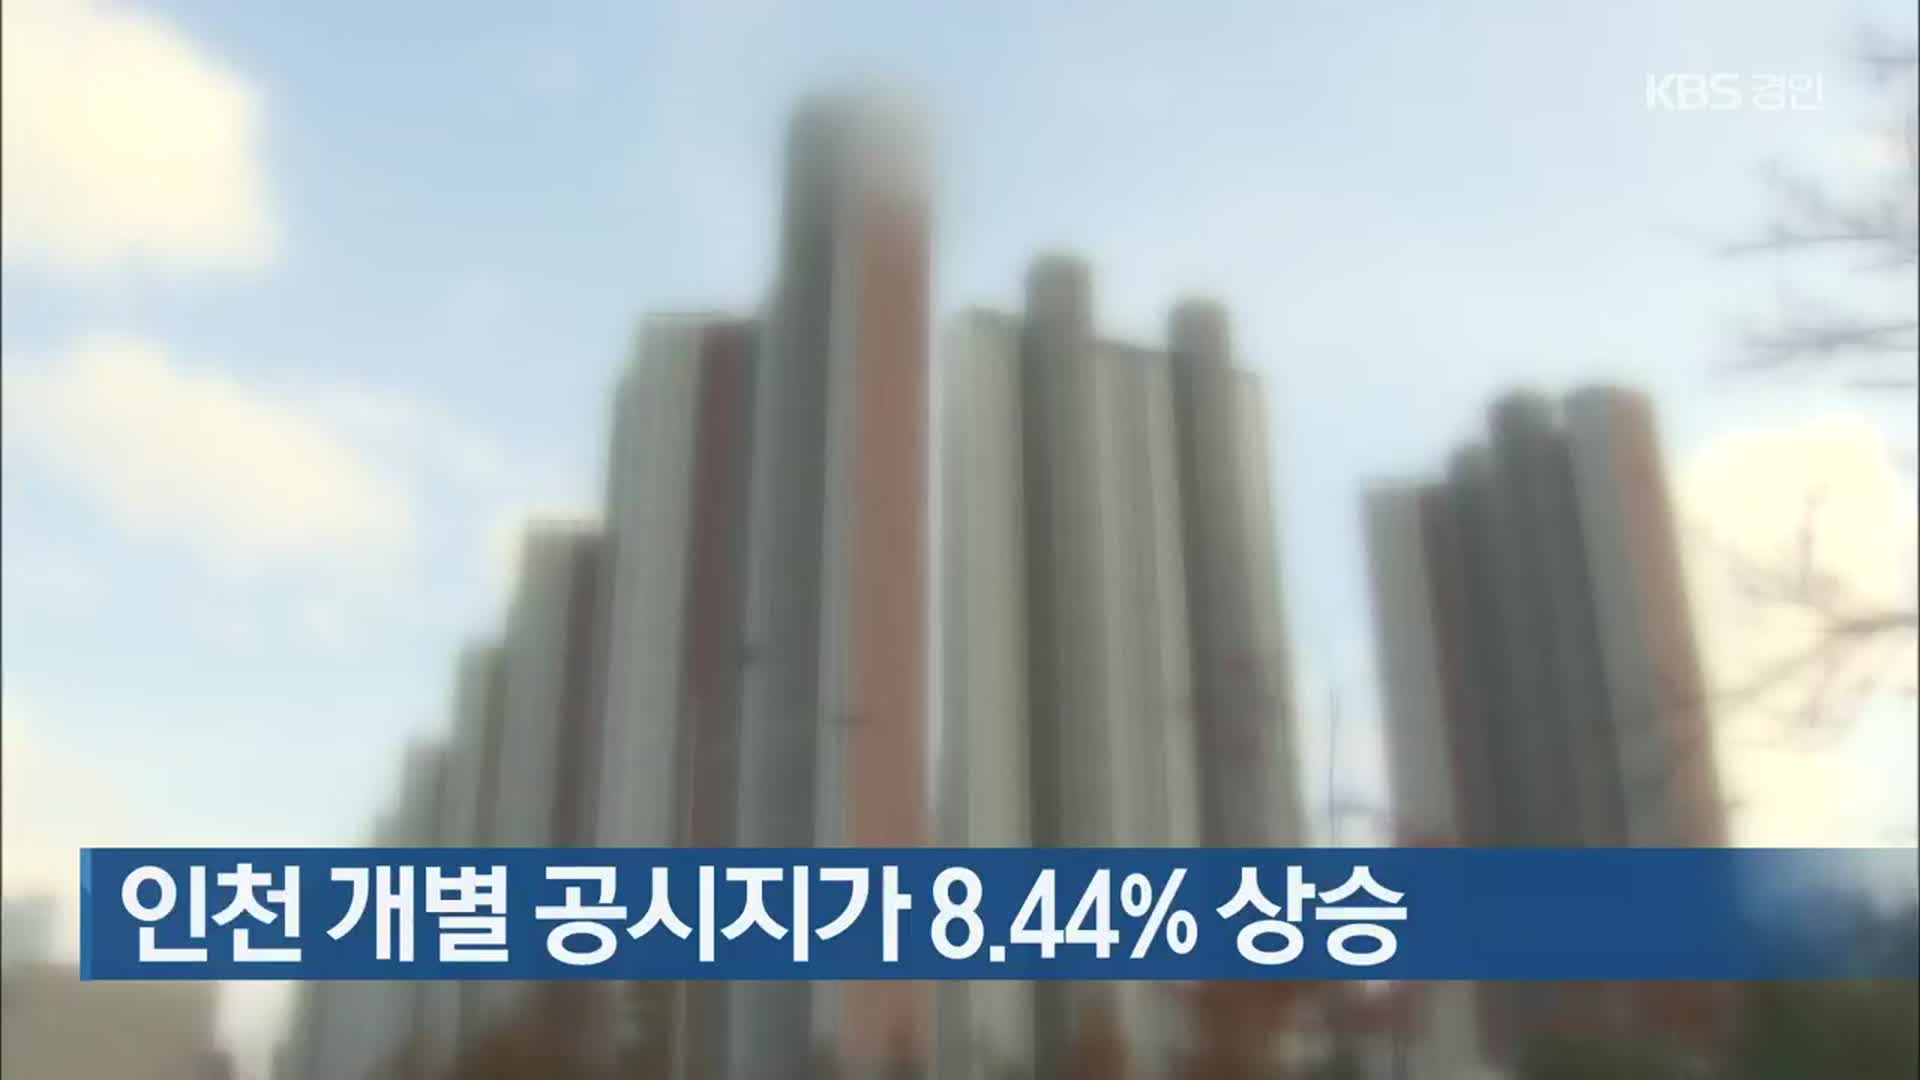 인천 개별 공시지가 8.44% 상승